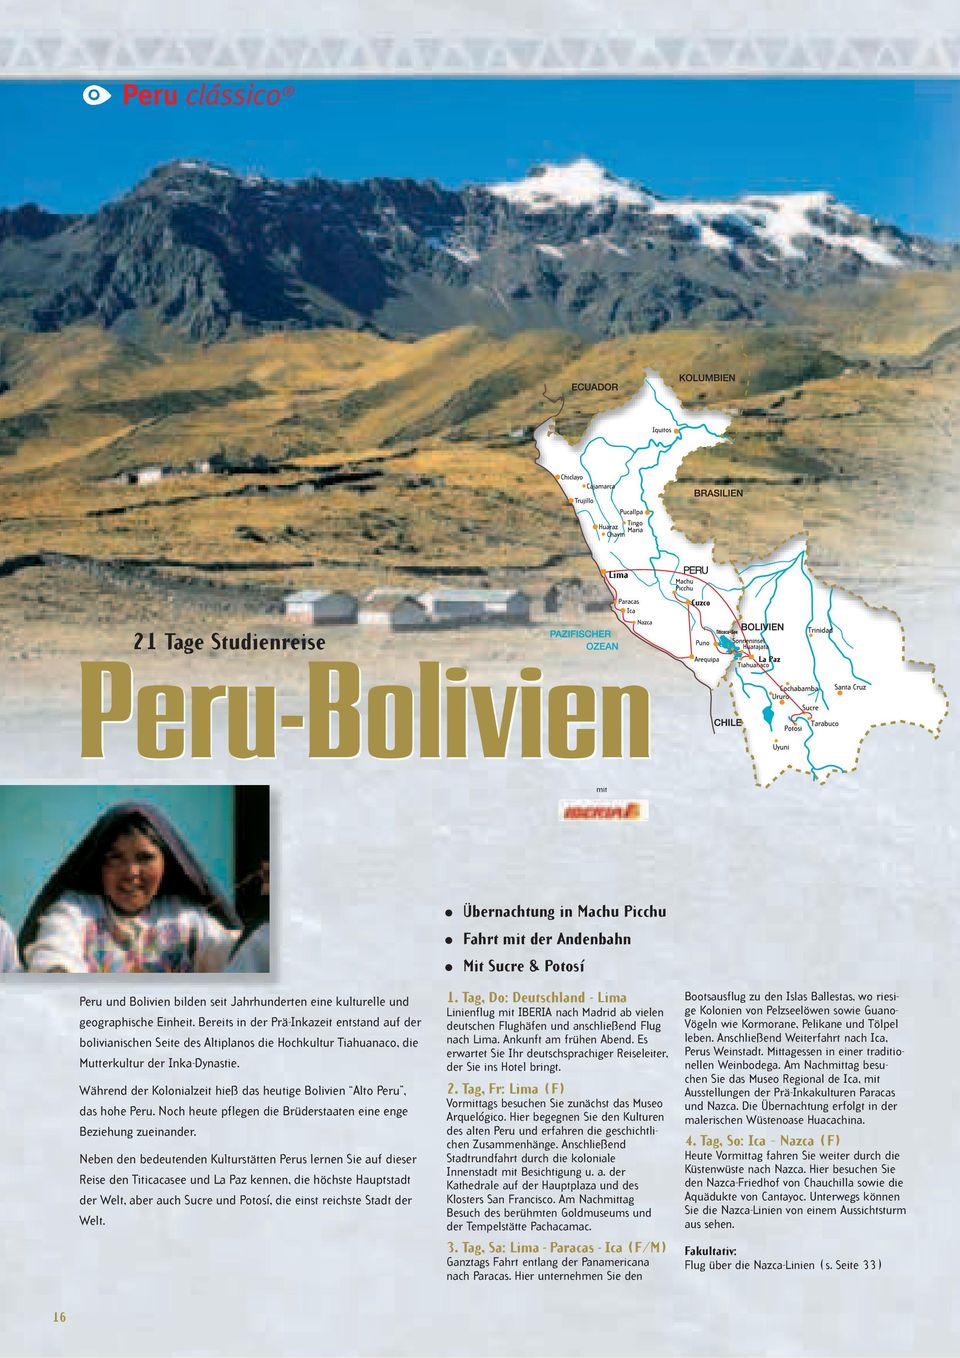 Während der Kolonialzeit hieß das heutige Bolivien Alto Peru, das hohe Peru. Noch heute pflegen die Brüderstaaten eine enge Beziehung zueinander.